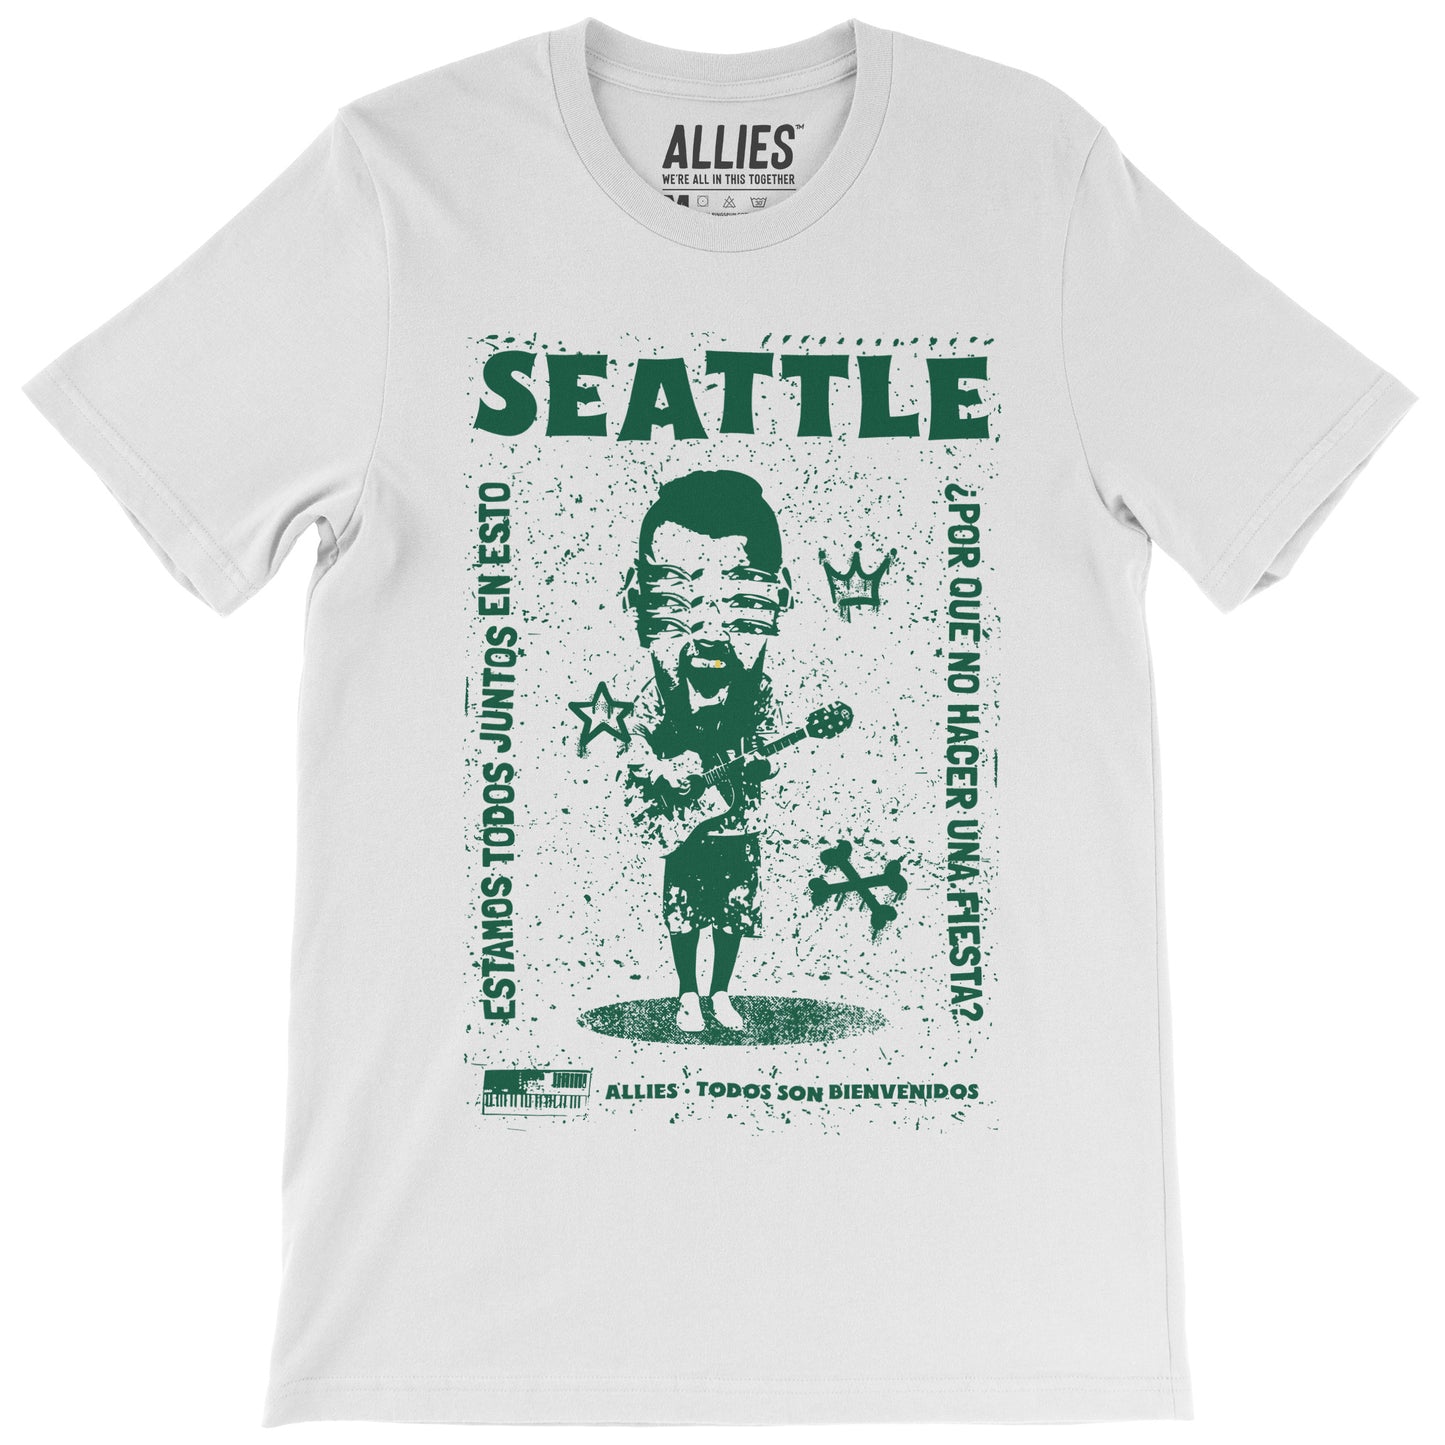 Seattle Punk T-shirt